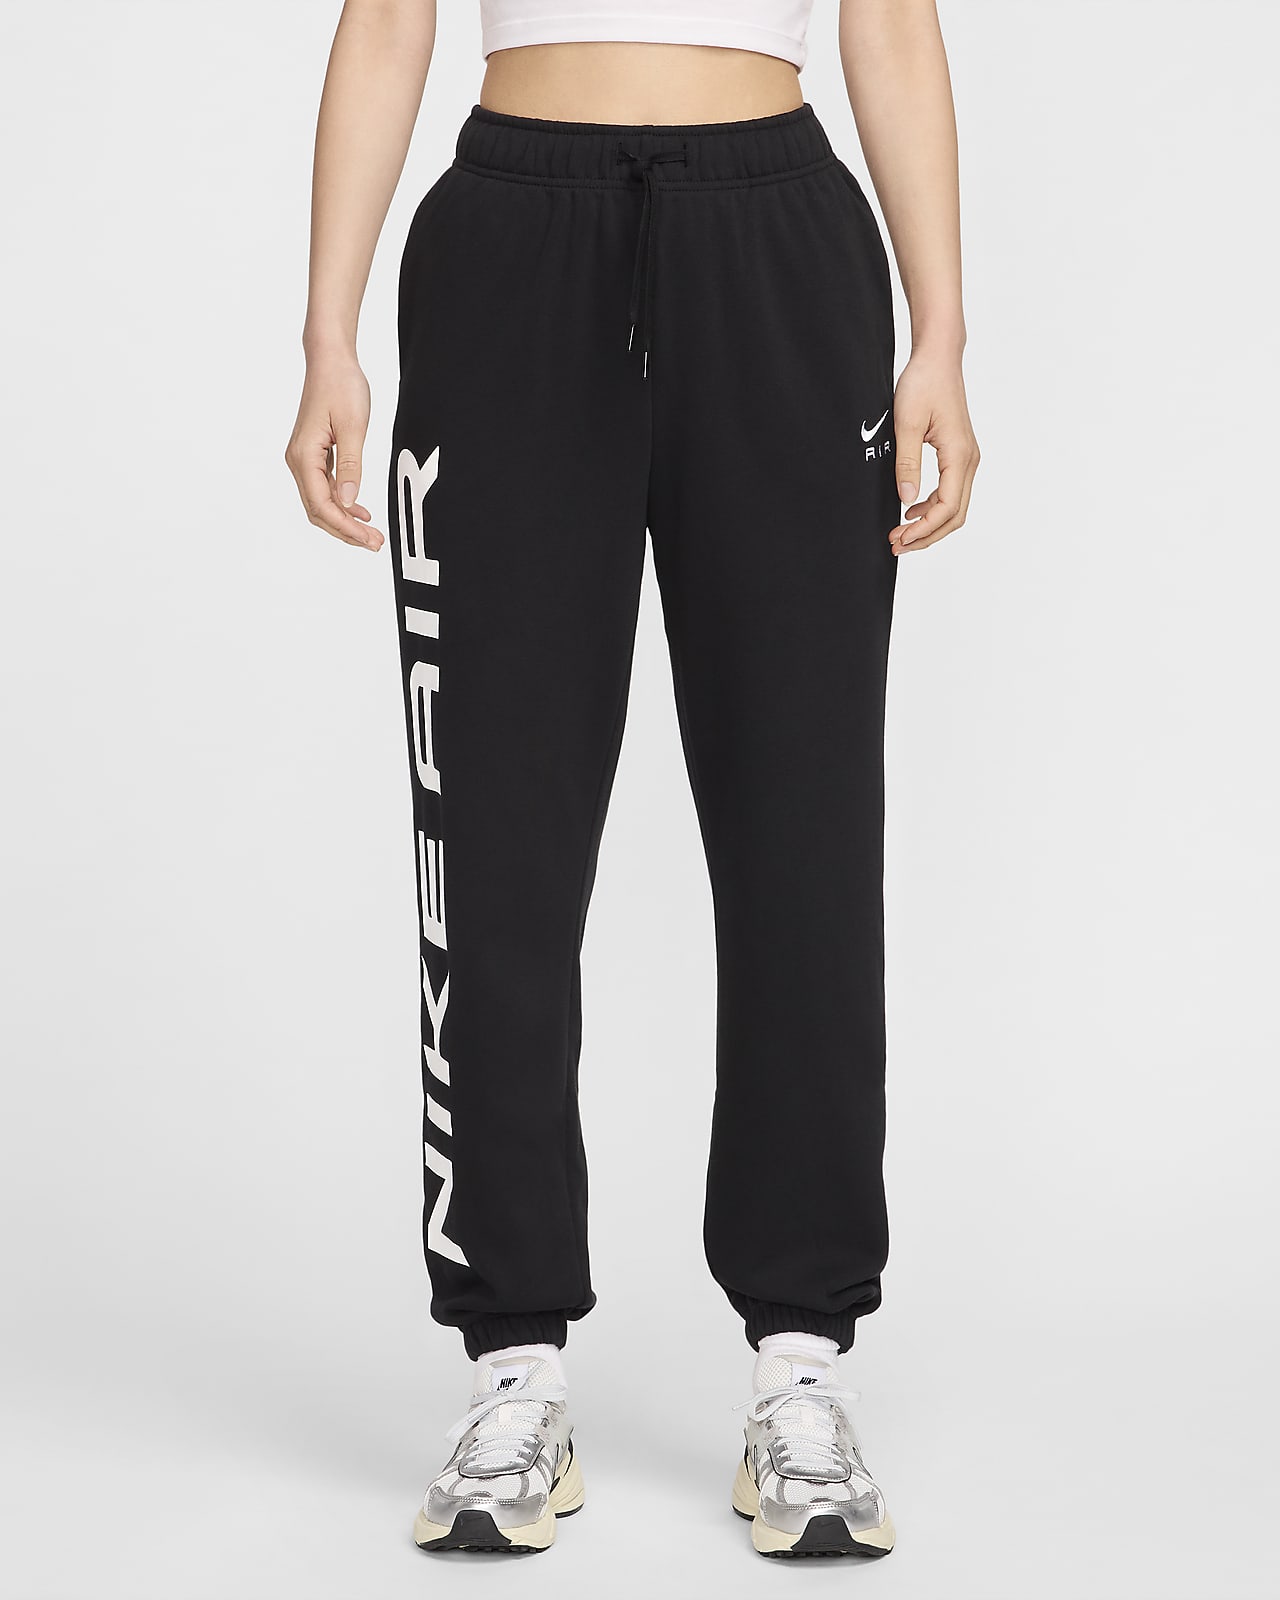 Nike Sweatpants Womens Large Black & White Running Lounge Zip Legs Gym  Ladies